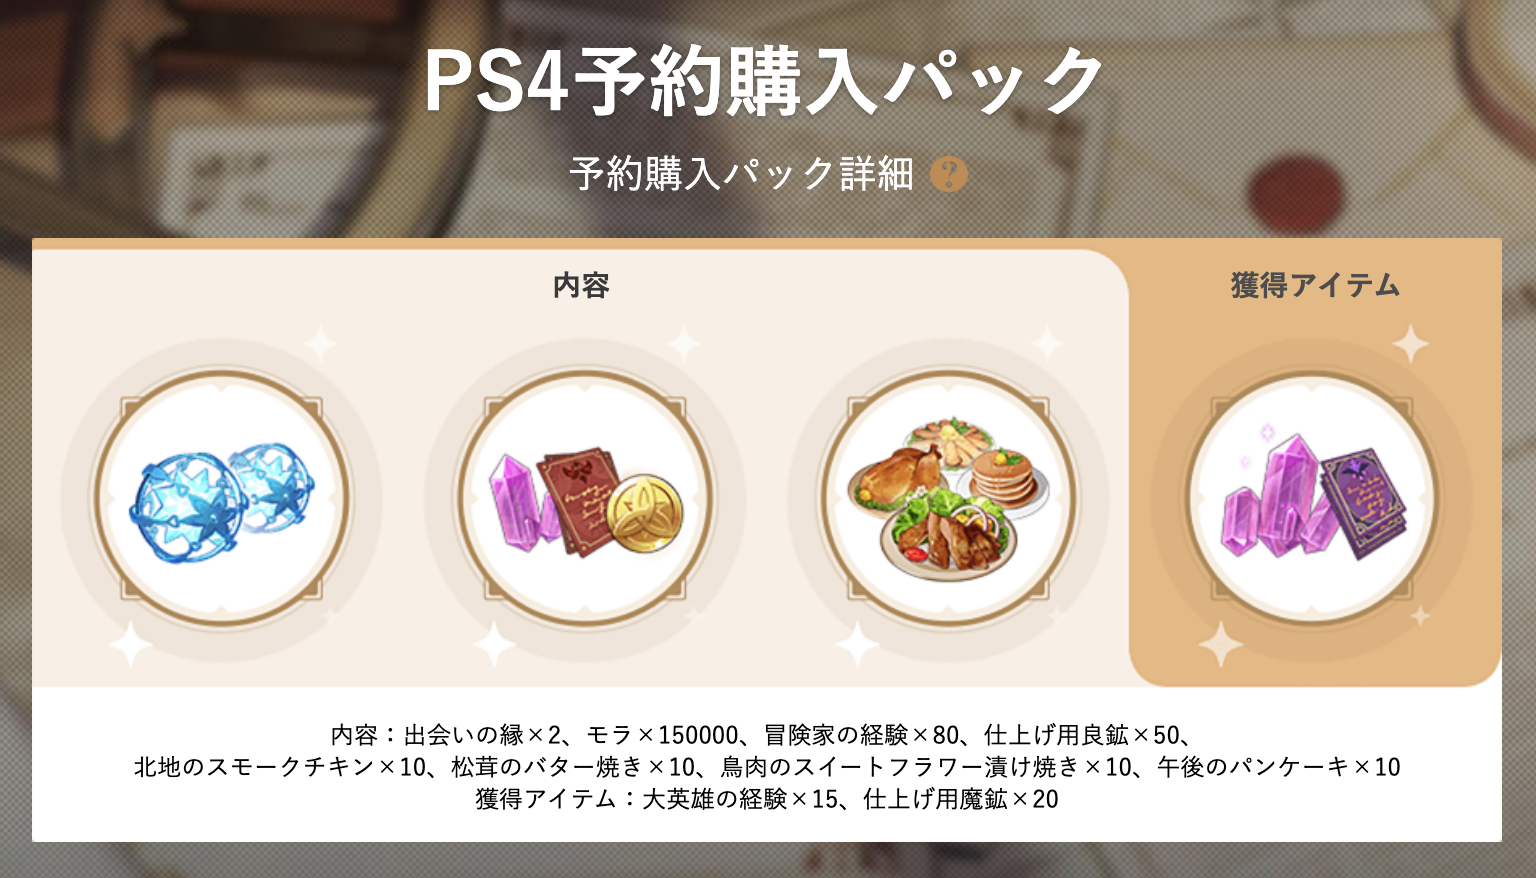 原神 - PS4予約購入パック